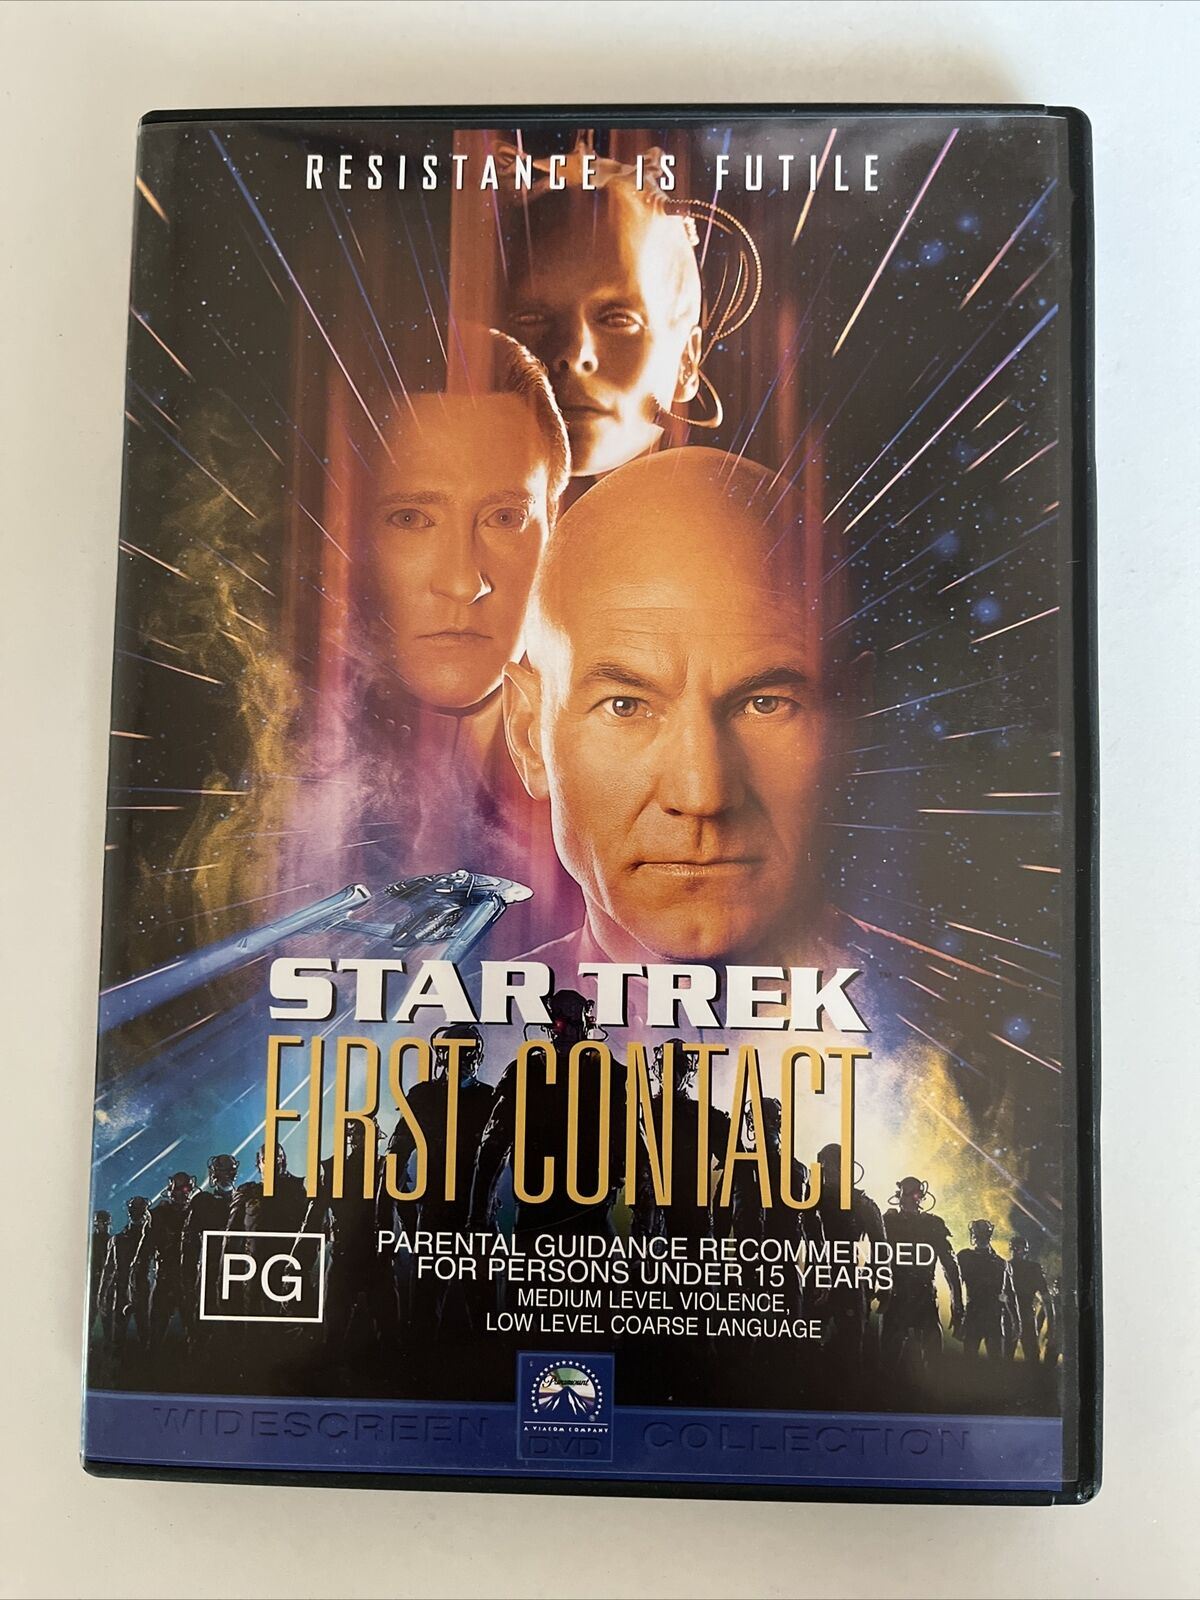 Star Trek - First Contact (DVD, 1996) Patrick Stewart. Region 4